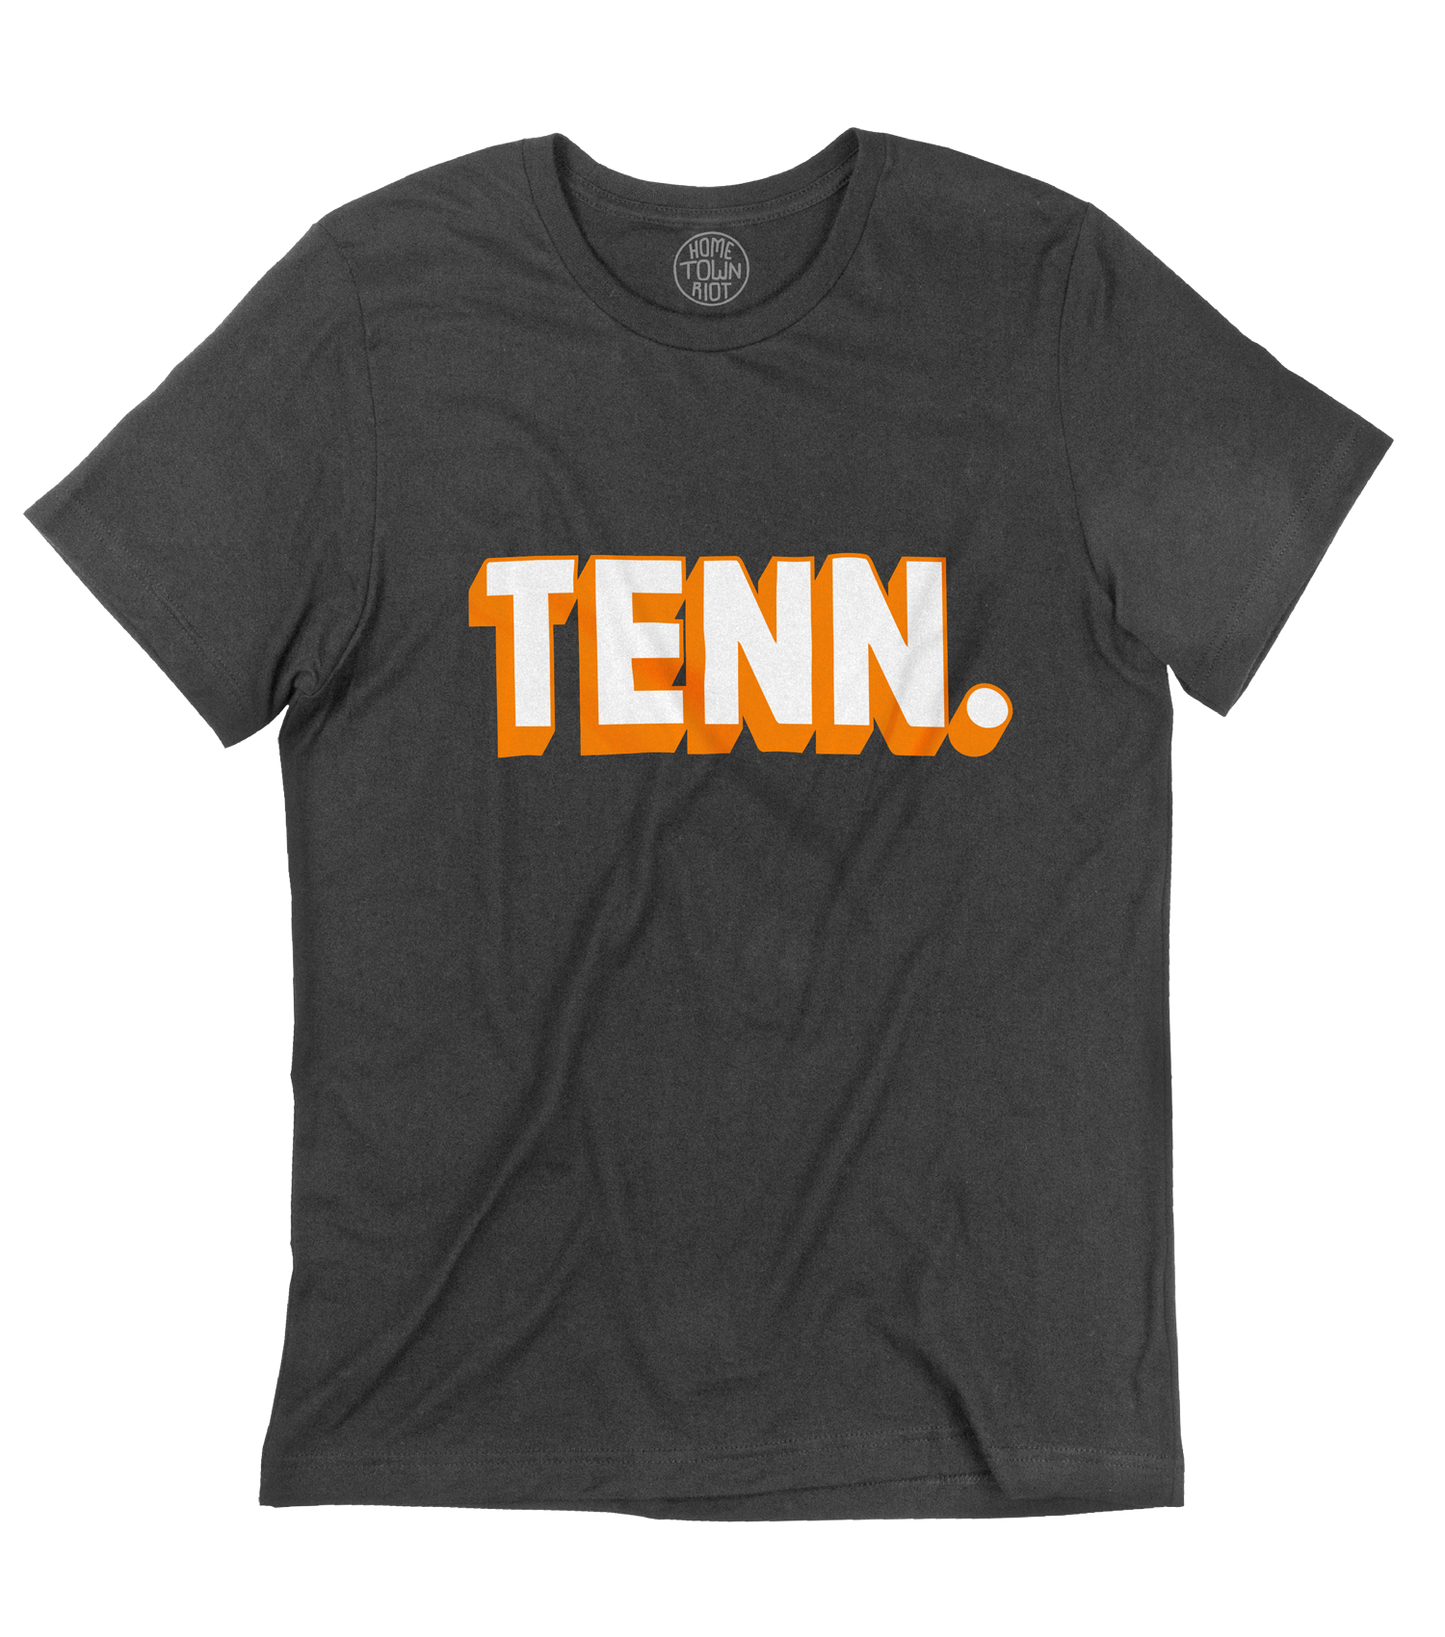 TENN. Shirt